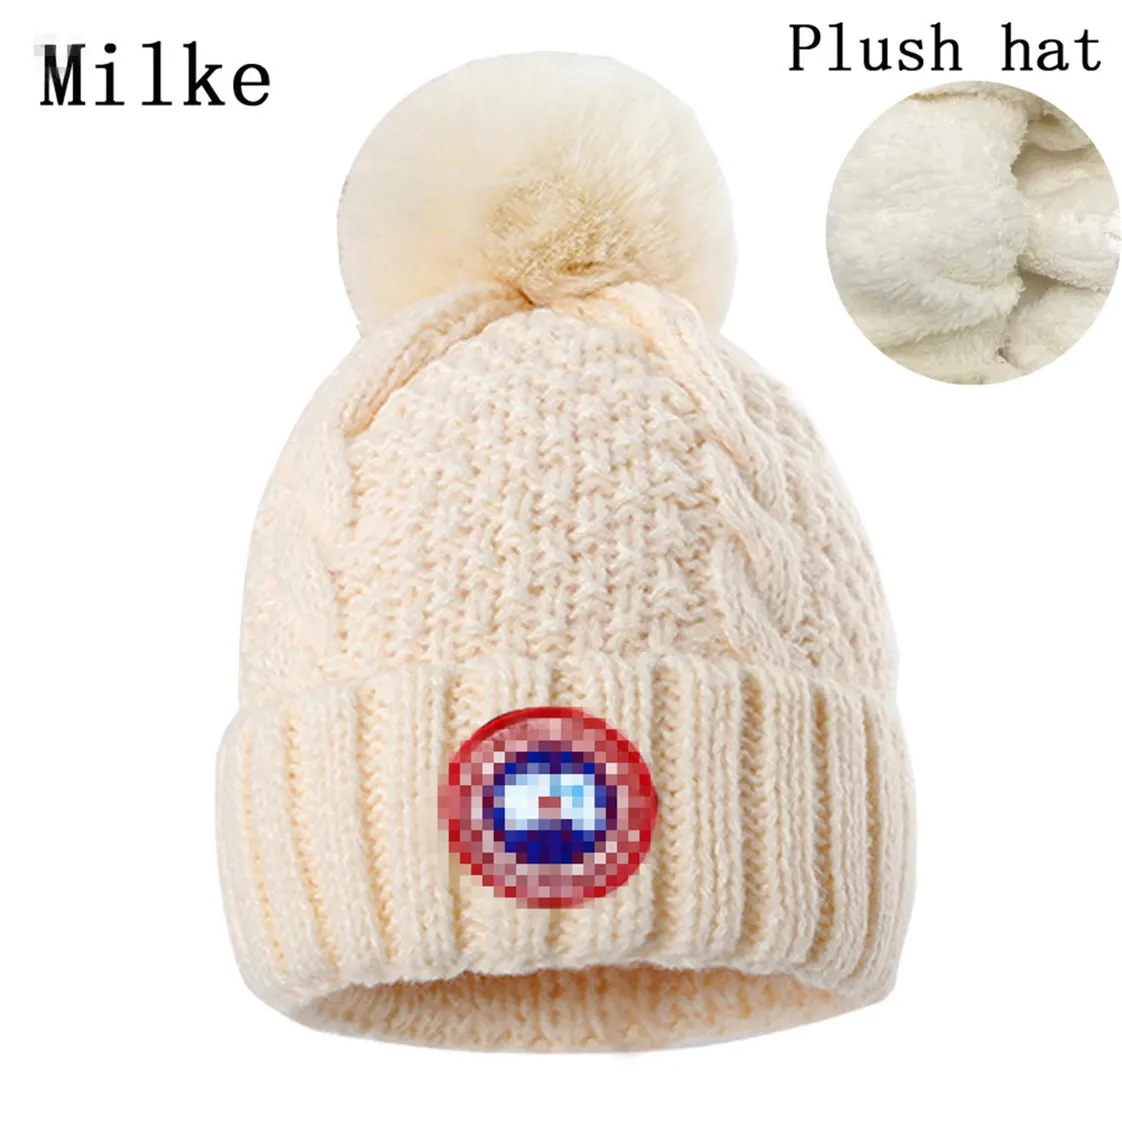 Moda Yeni Tasarımcı Şapkalar Erkek ve Kadınlar Beanie Sonbahar/Kış Termal Örgü Şapka Kayak Markası Bonnet Yüksek Kaliteli Kafatası Şapkası Lüks Sıcak Kap N-15